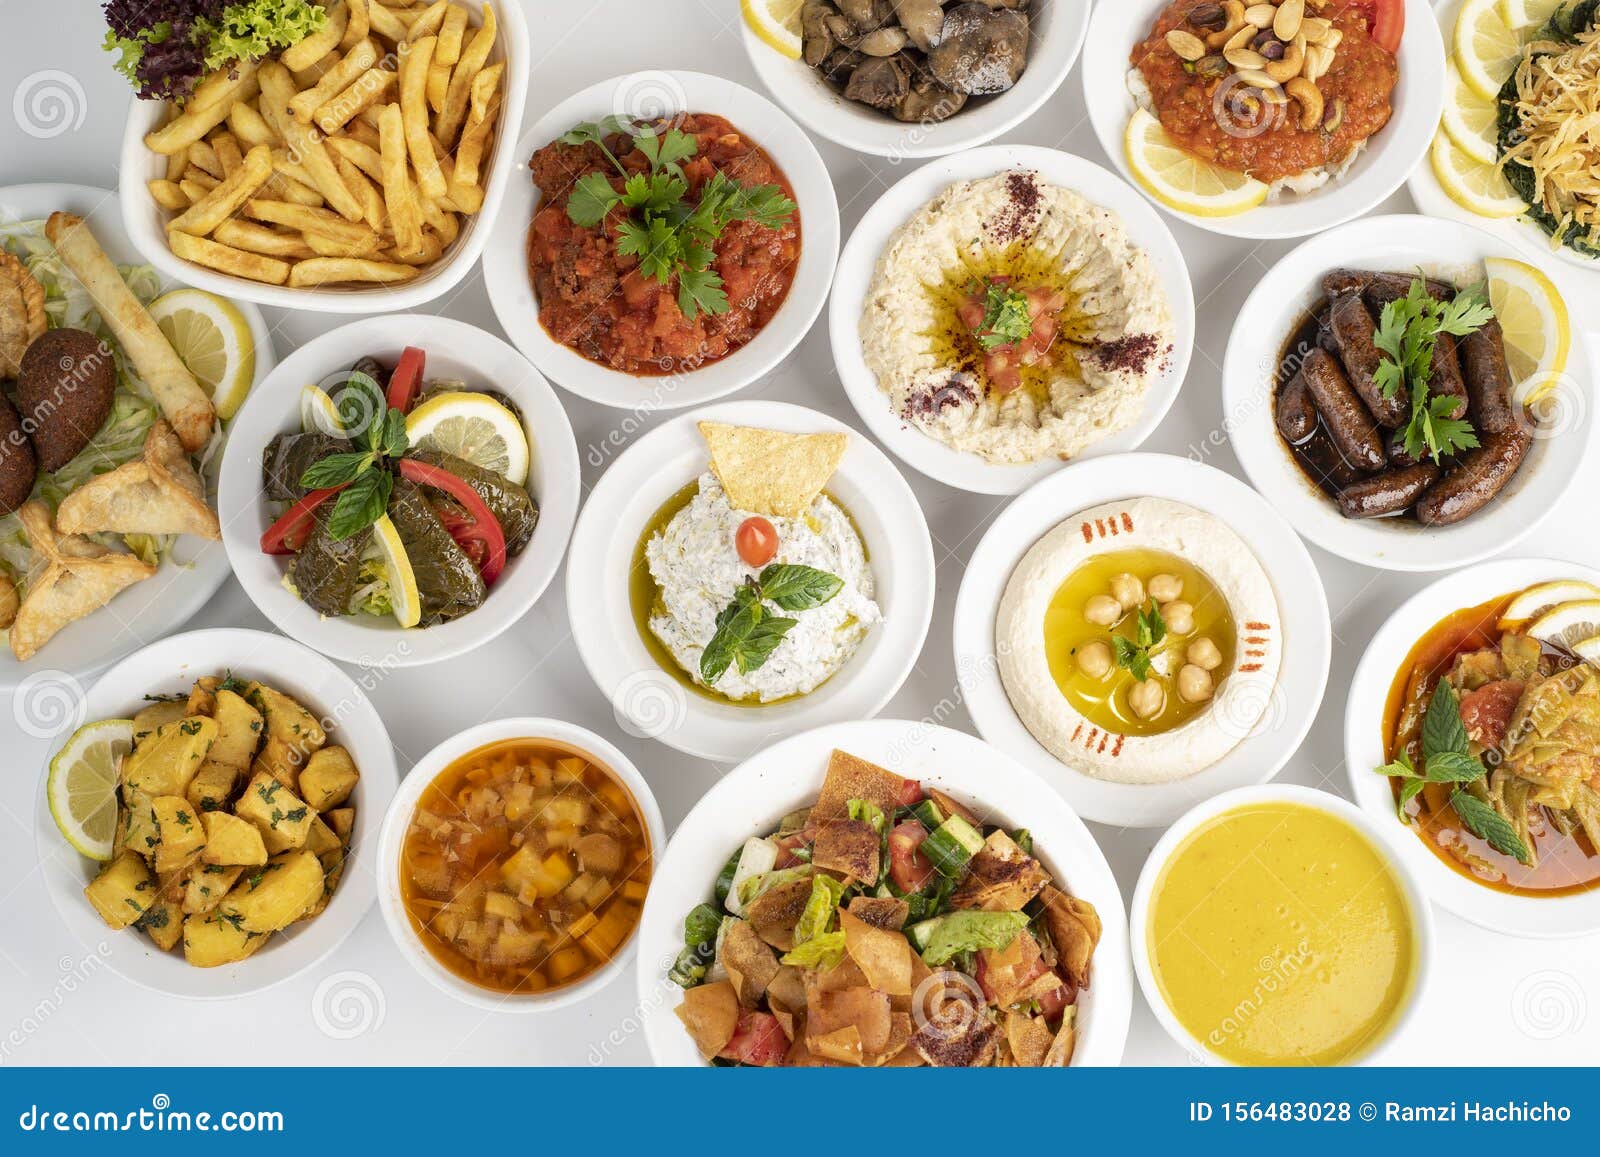 中东地区有什么样的饮食习惯和饮食文化呢? - 知乎